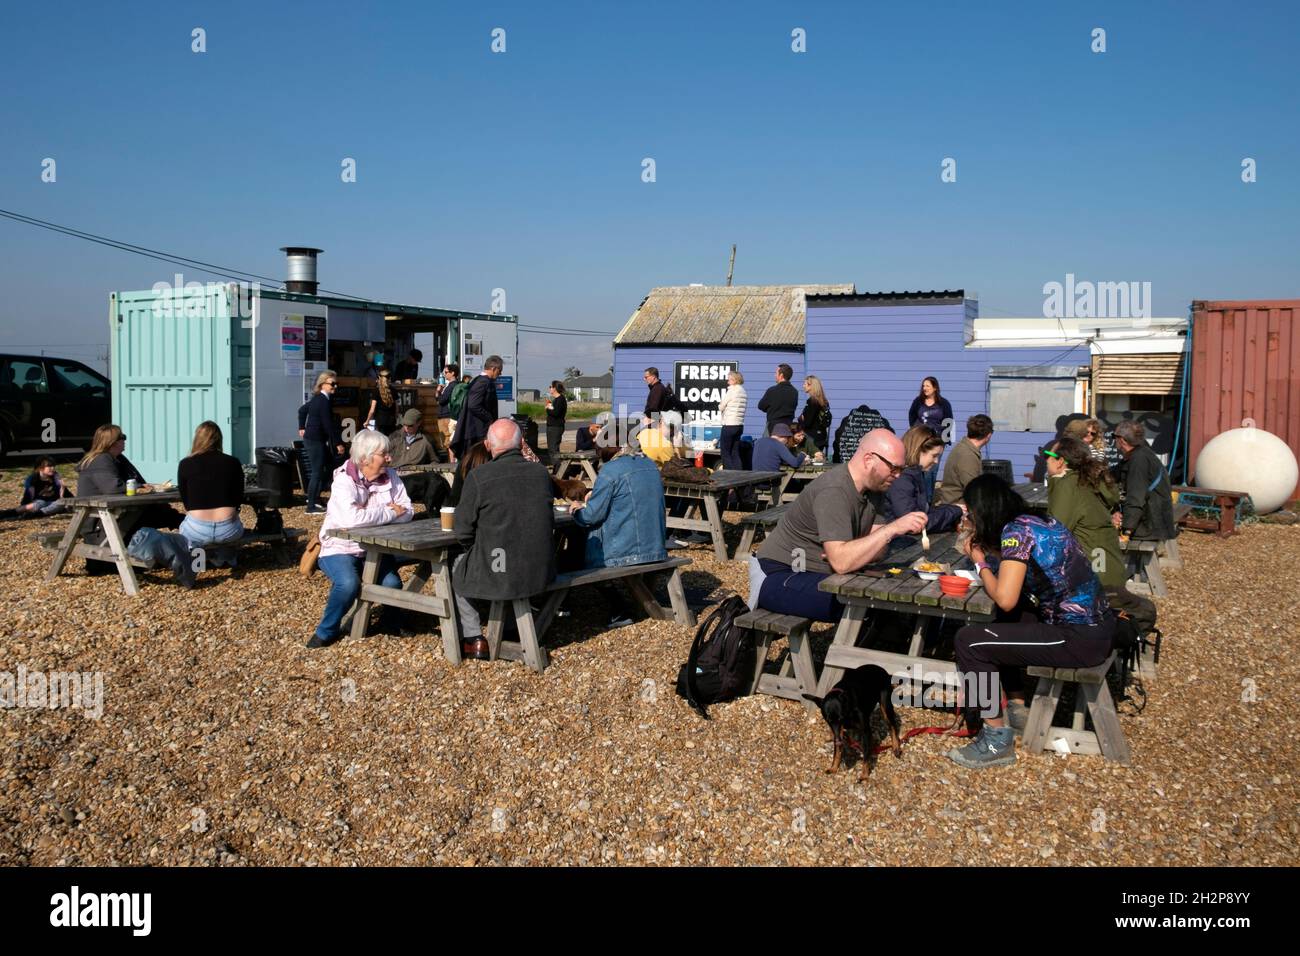 Menschen Kunden sitzen an Tischen im Dungeness Fischhaus Snack Shack in Kent Coast England Großbritannien GROSSBRITANNIEN KATHY DEWITT Stockfoto